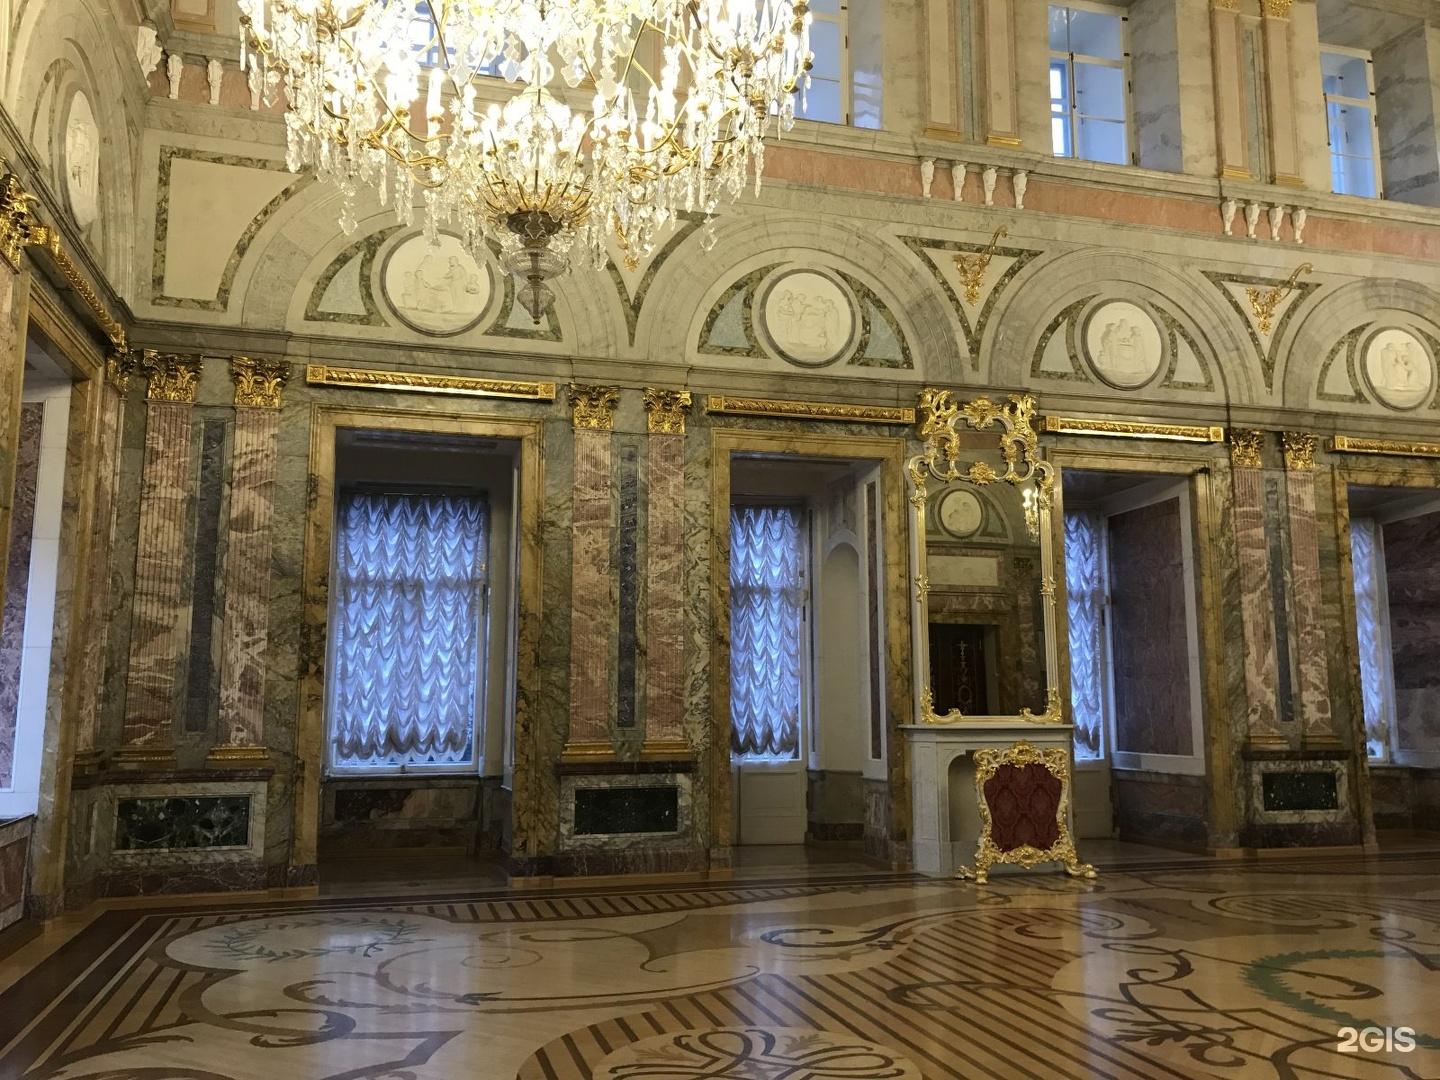 Орловский зал мраморного дворца фото